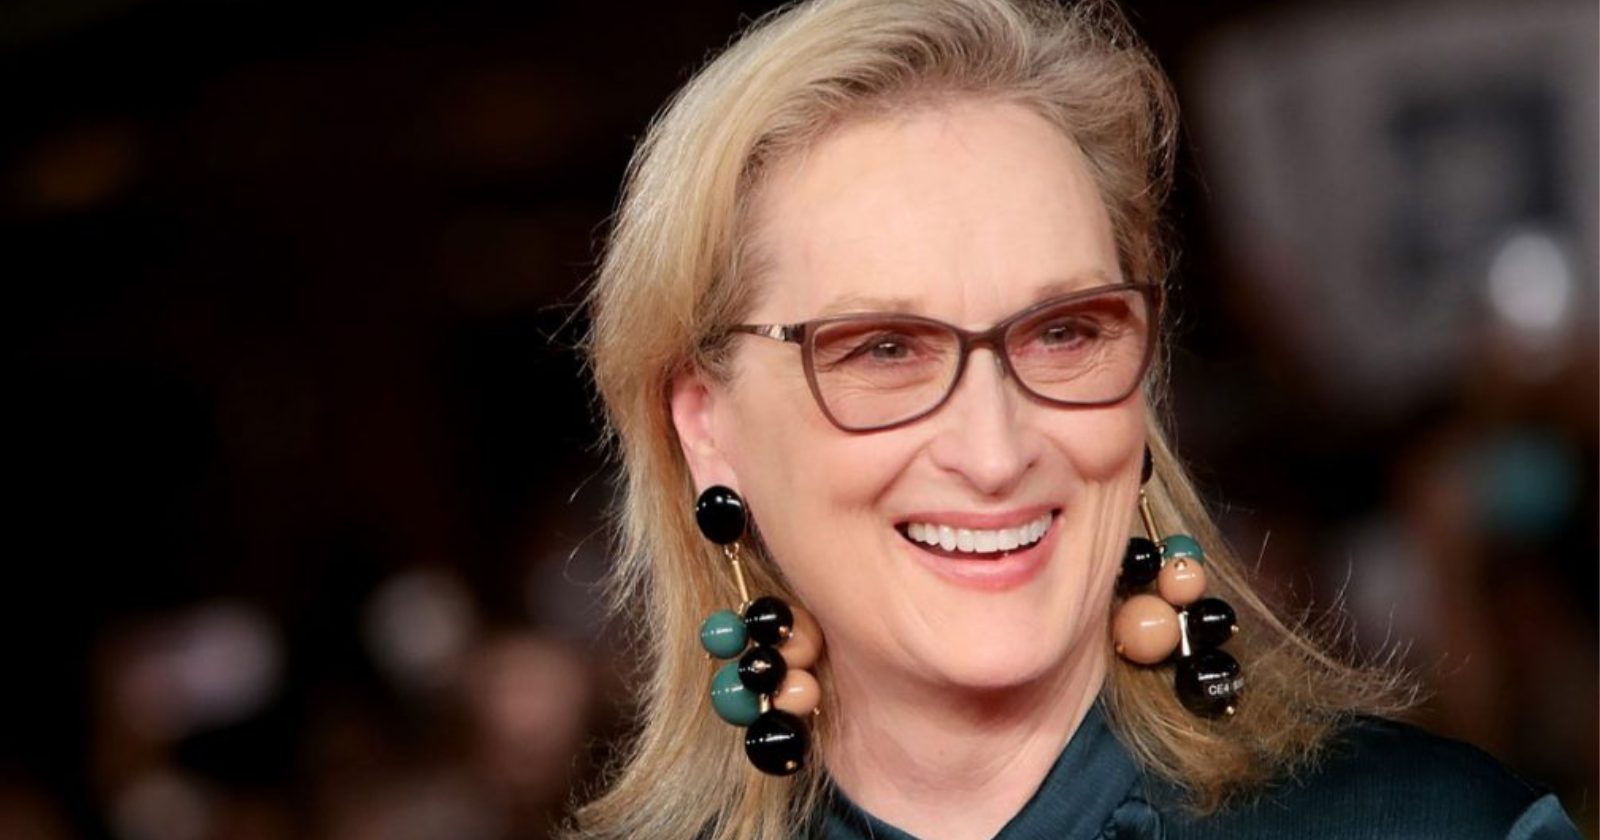 Frase dita por Meryl Streep tem a mensagem mais linda sobre o Dia das Mães; vai te emocionar